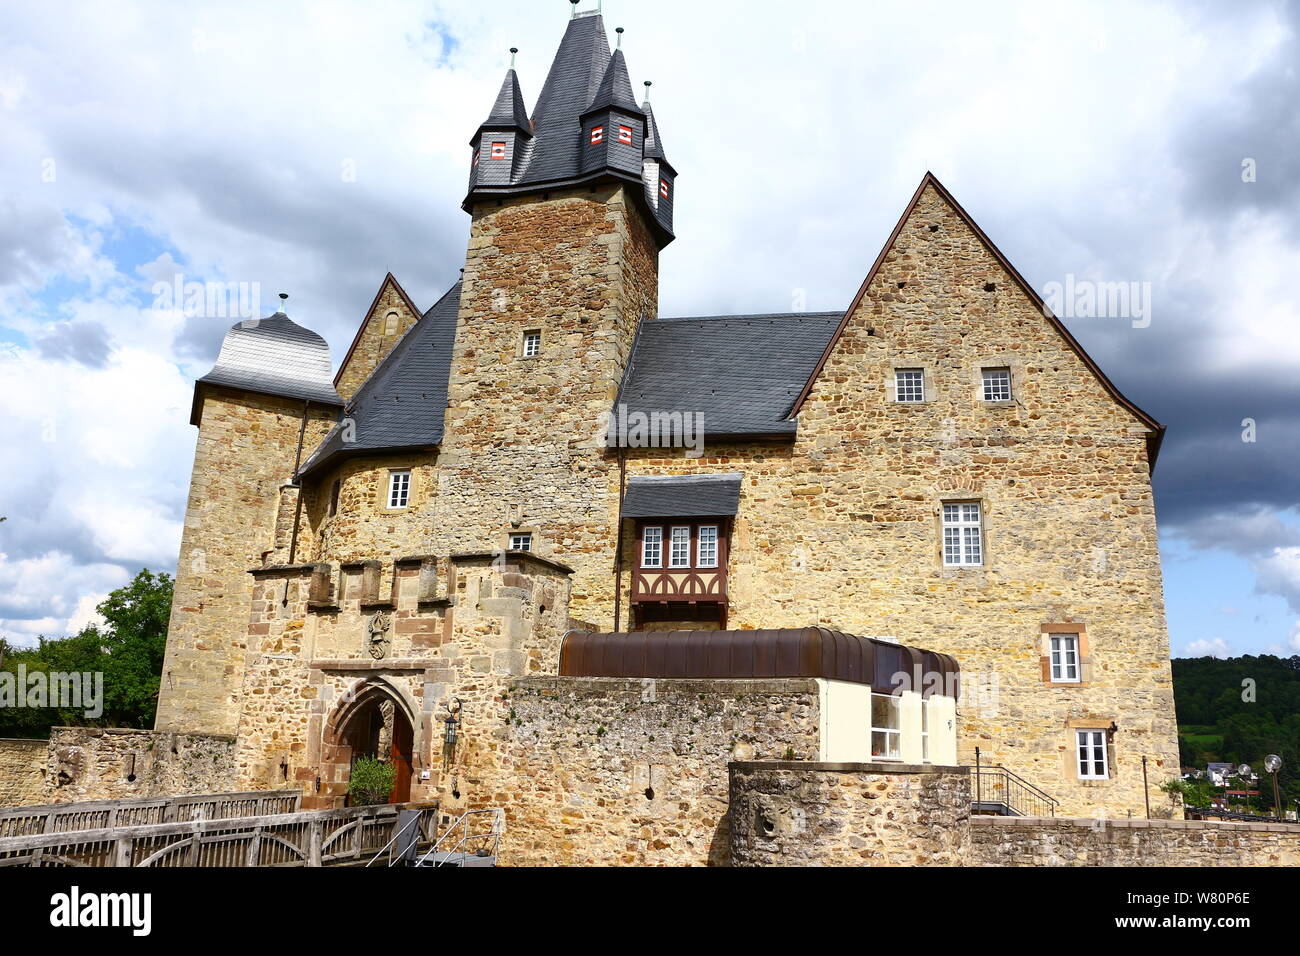 Blick auf das Schloss Spangenberg in Nordhessen Stock Photo